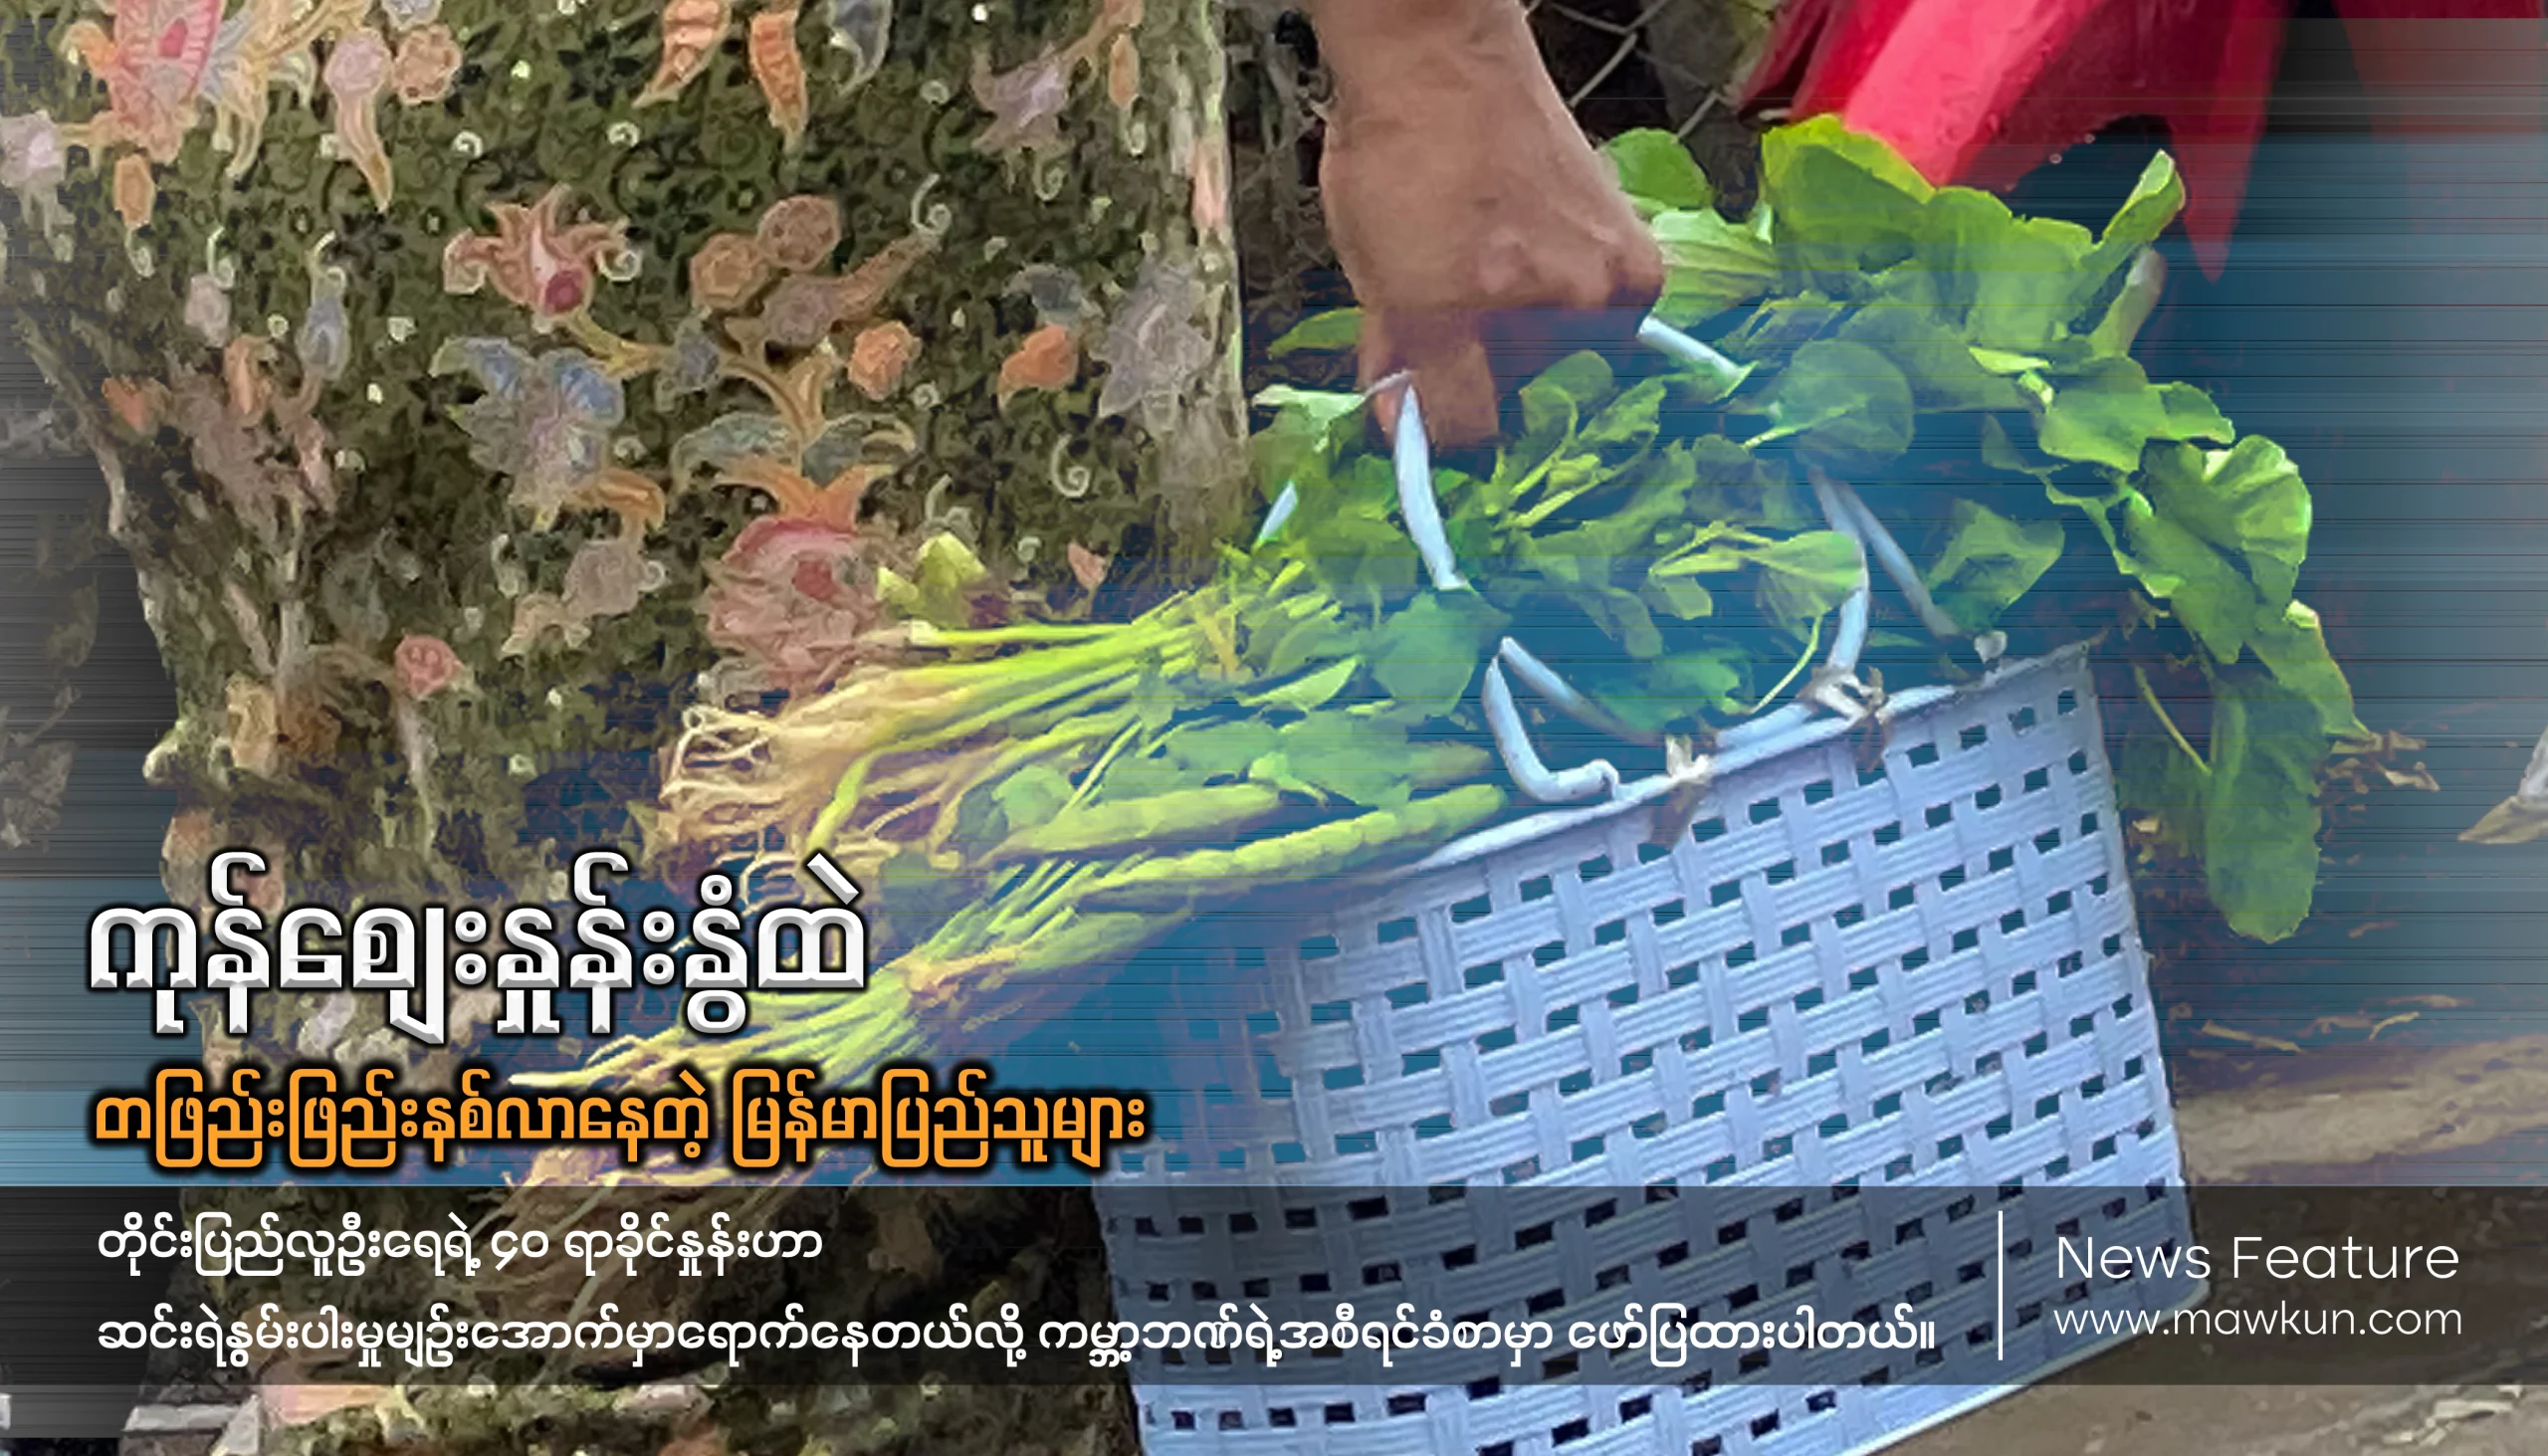 ကုန်စျေးနှုန်းနွံထဲ တဖြည်းဖြည်းနစ်လာနေတဲ့ မြန်မာပြည်သူများ